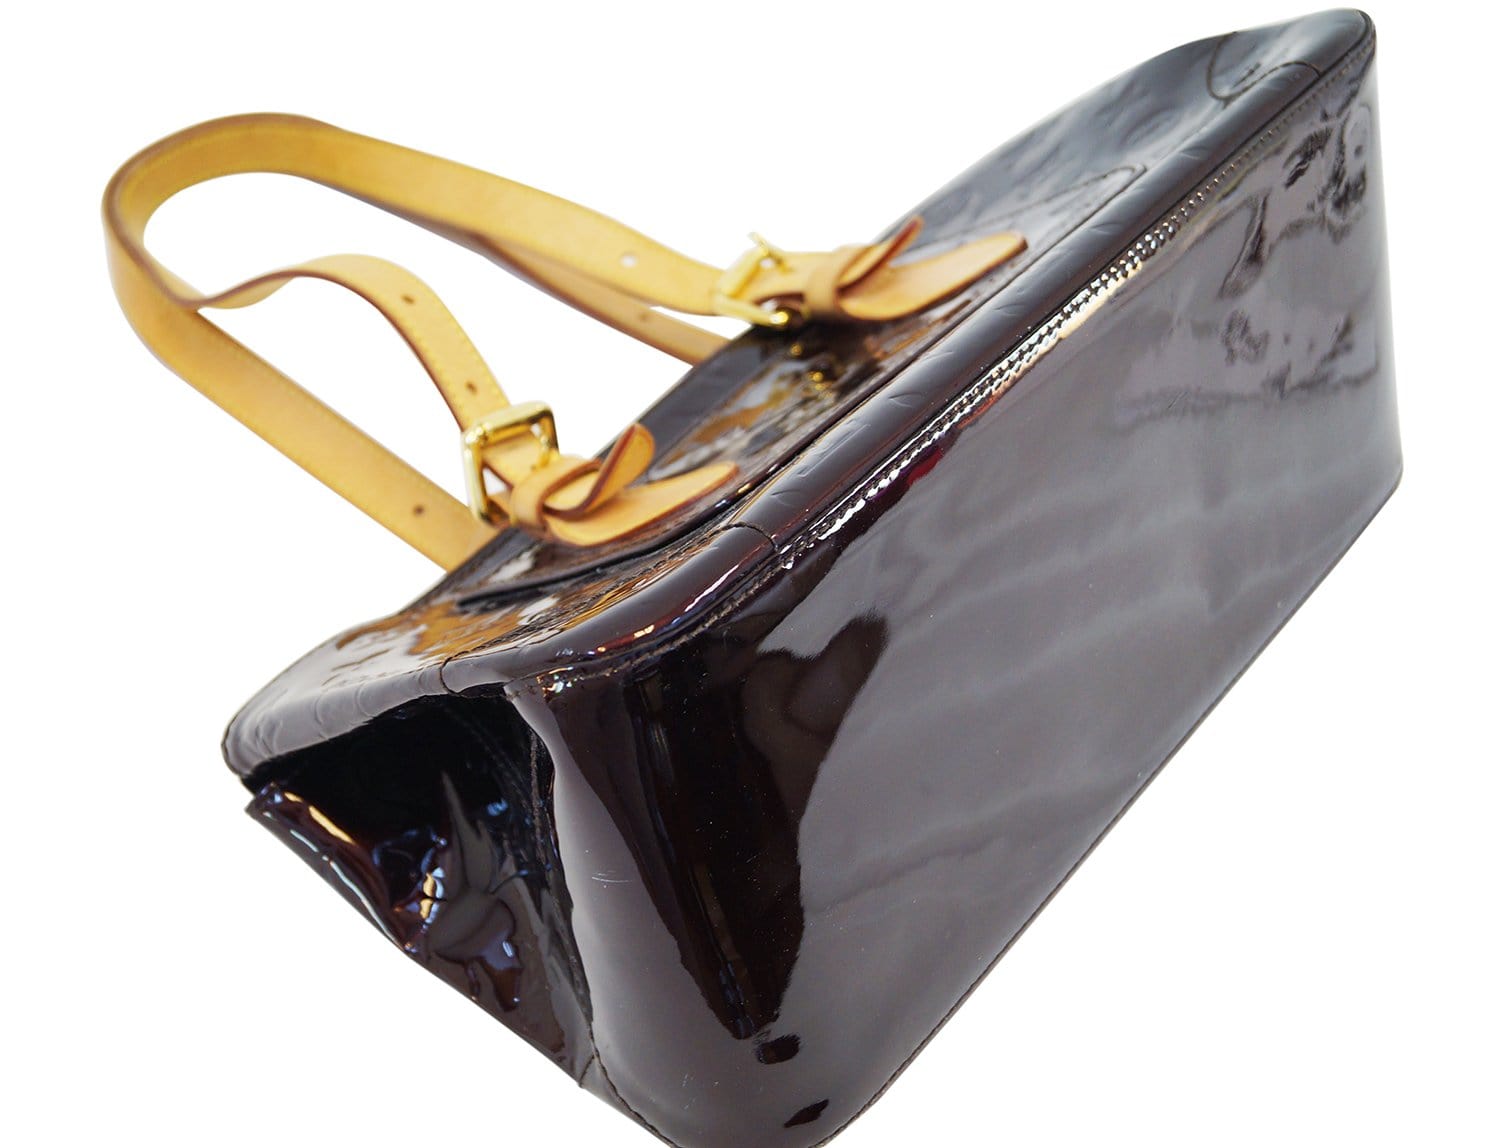 Louis Vuitton Pomme D'Amour Monogram Vernis Rosewood Avenue Bag